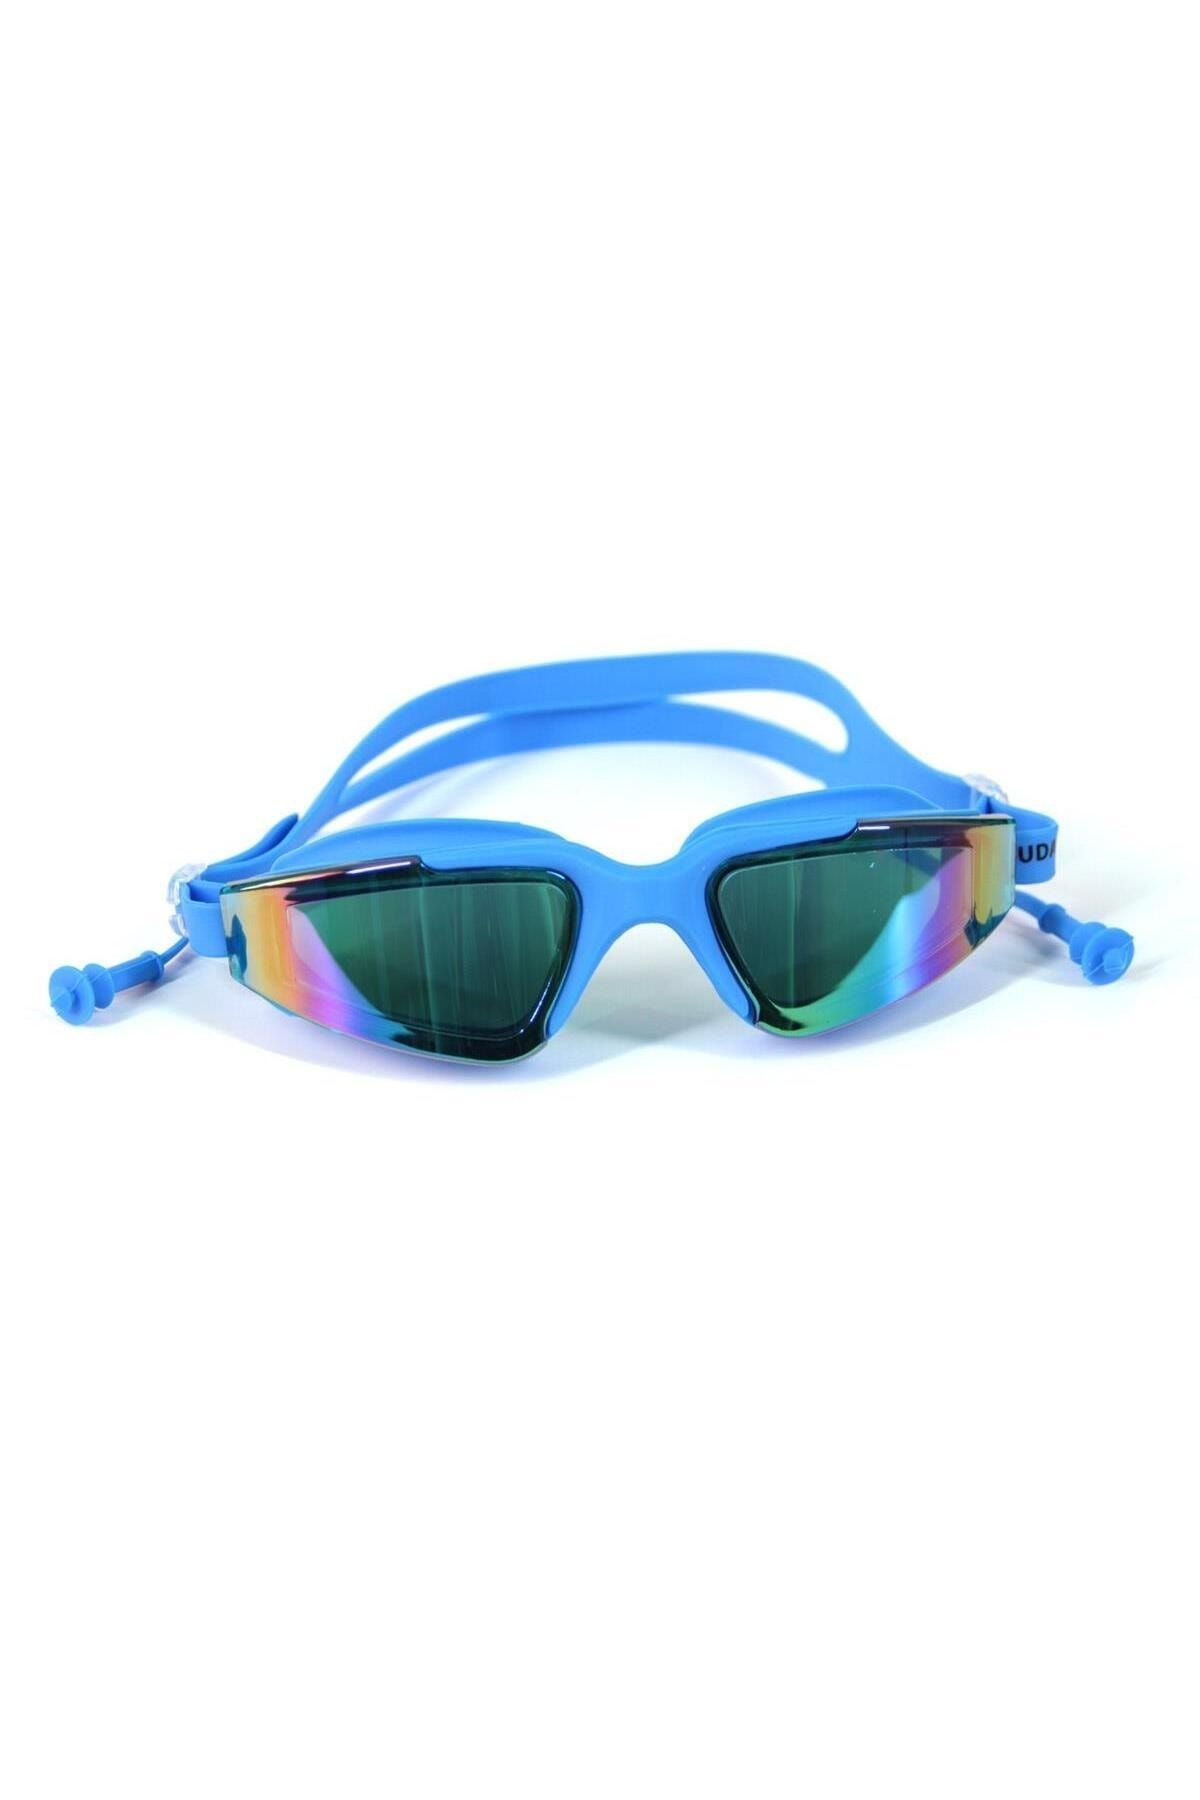 BERMUDA Silikon Sörf Yüzücü Gözlüğü [kulaklıklı | Uv Koruma] Açık Mavi